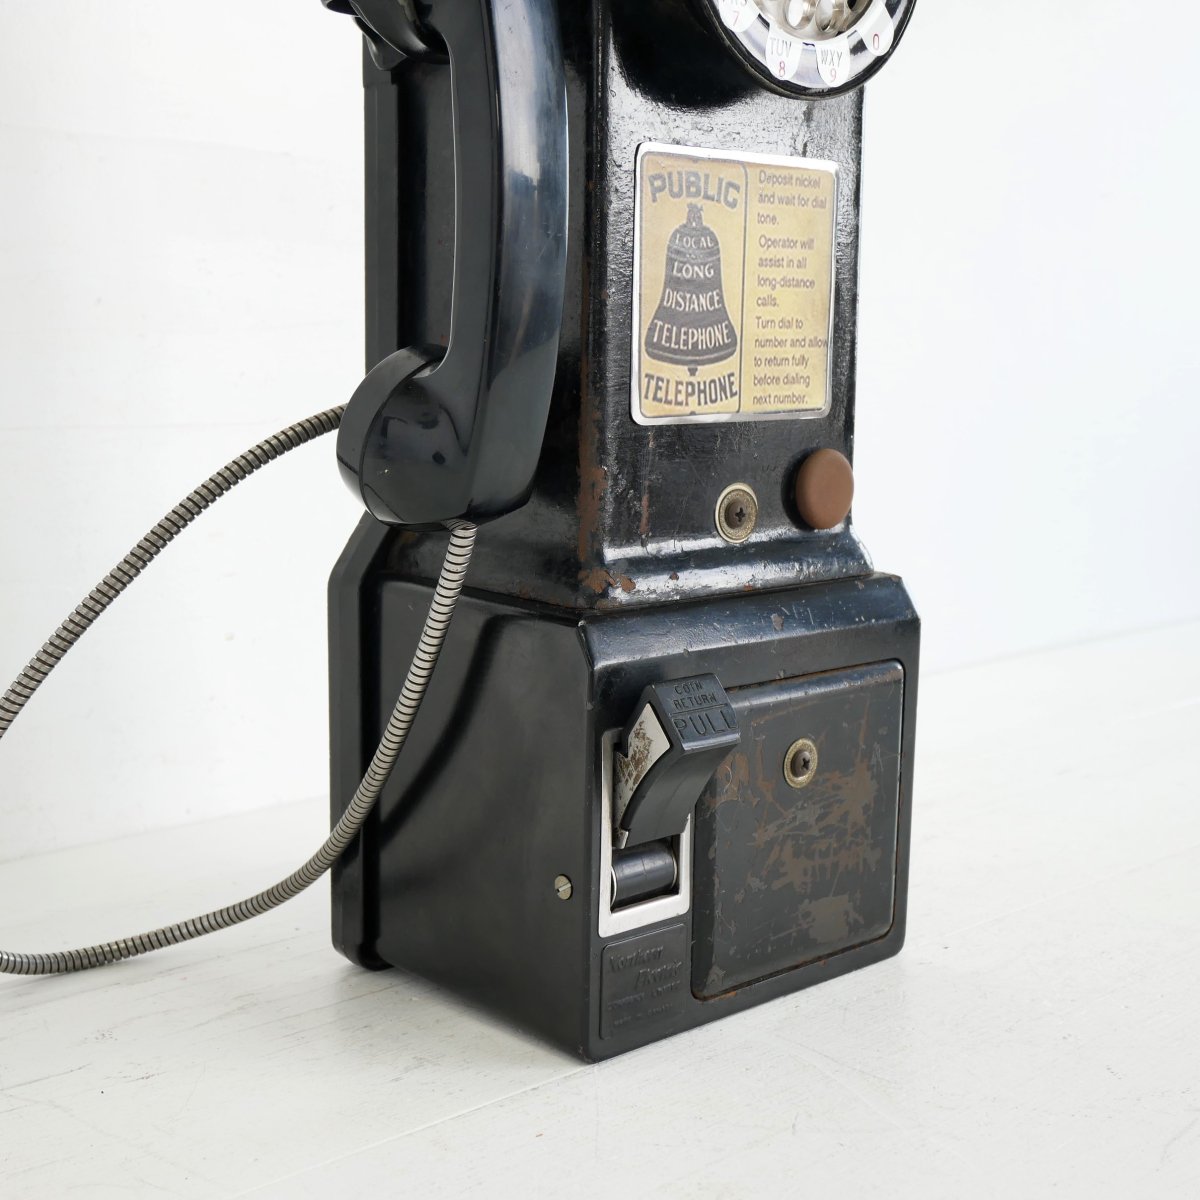 電話機 ディスプレイ パブリックフォン 50s ヴィンテージ アメリカ 